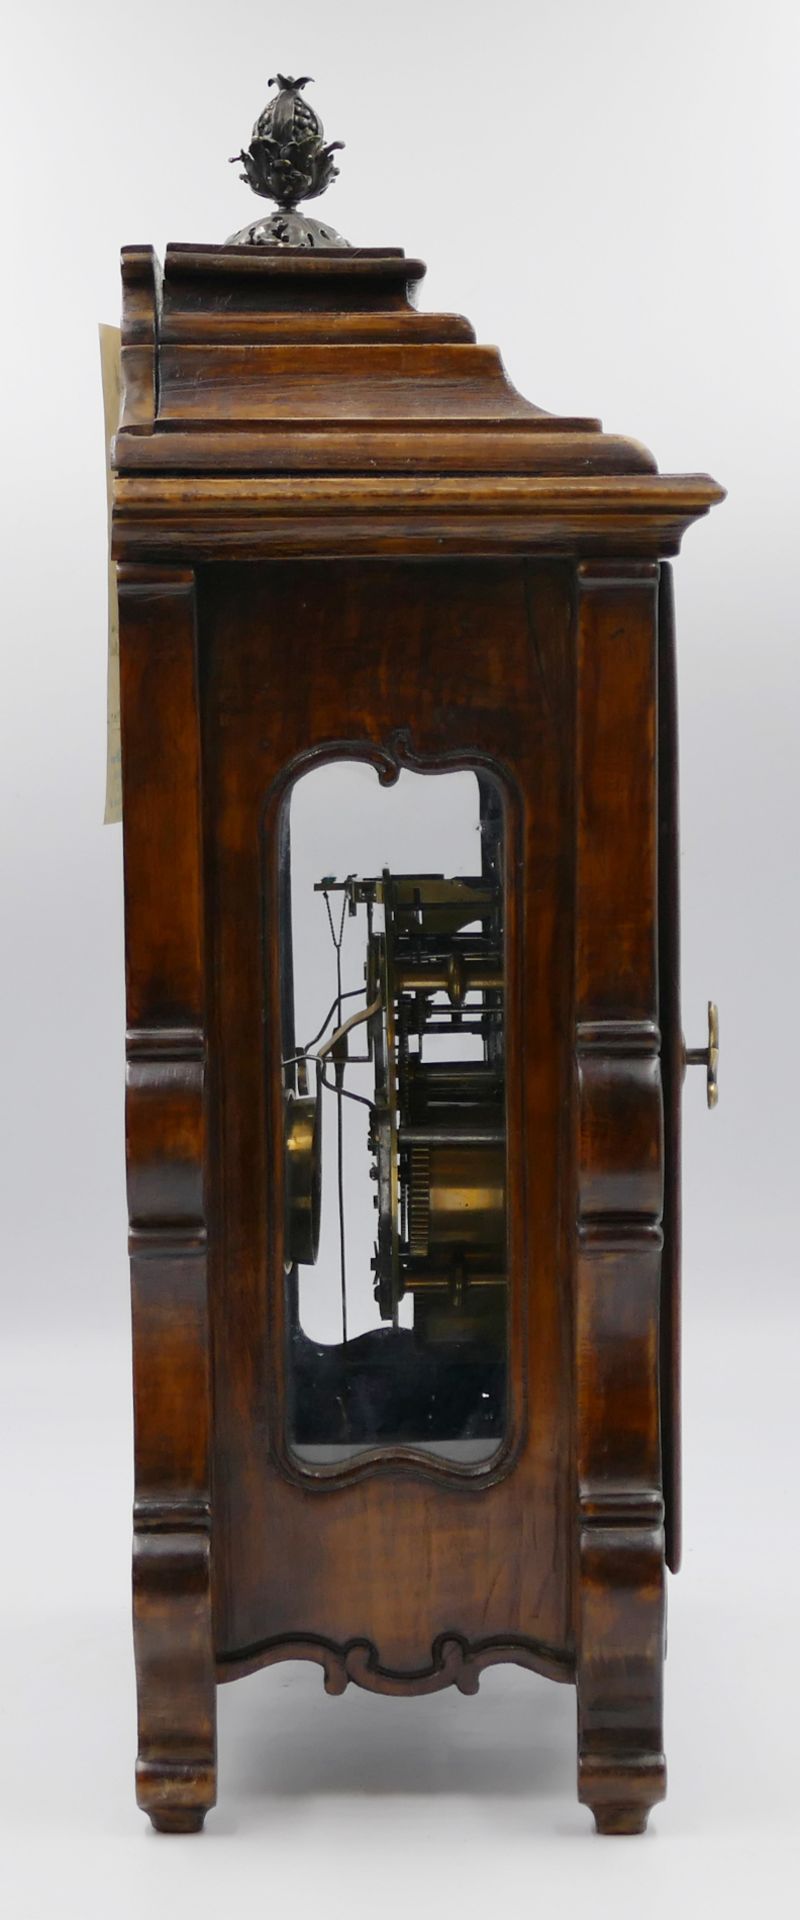 1 Tischuhr/Stockuhr lt. beiliegender Schätzung fränkisch um 1750, Holzgehäuse beschnitzt, emailliert - Image 3 of 5